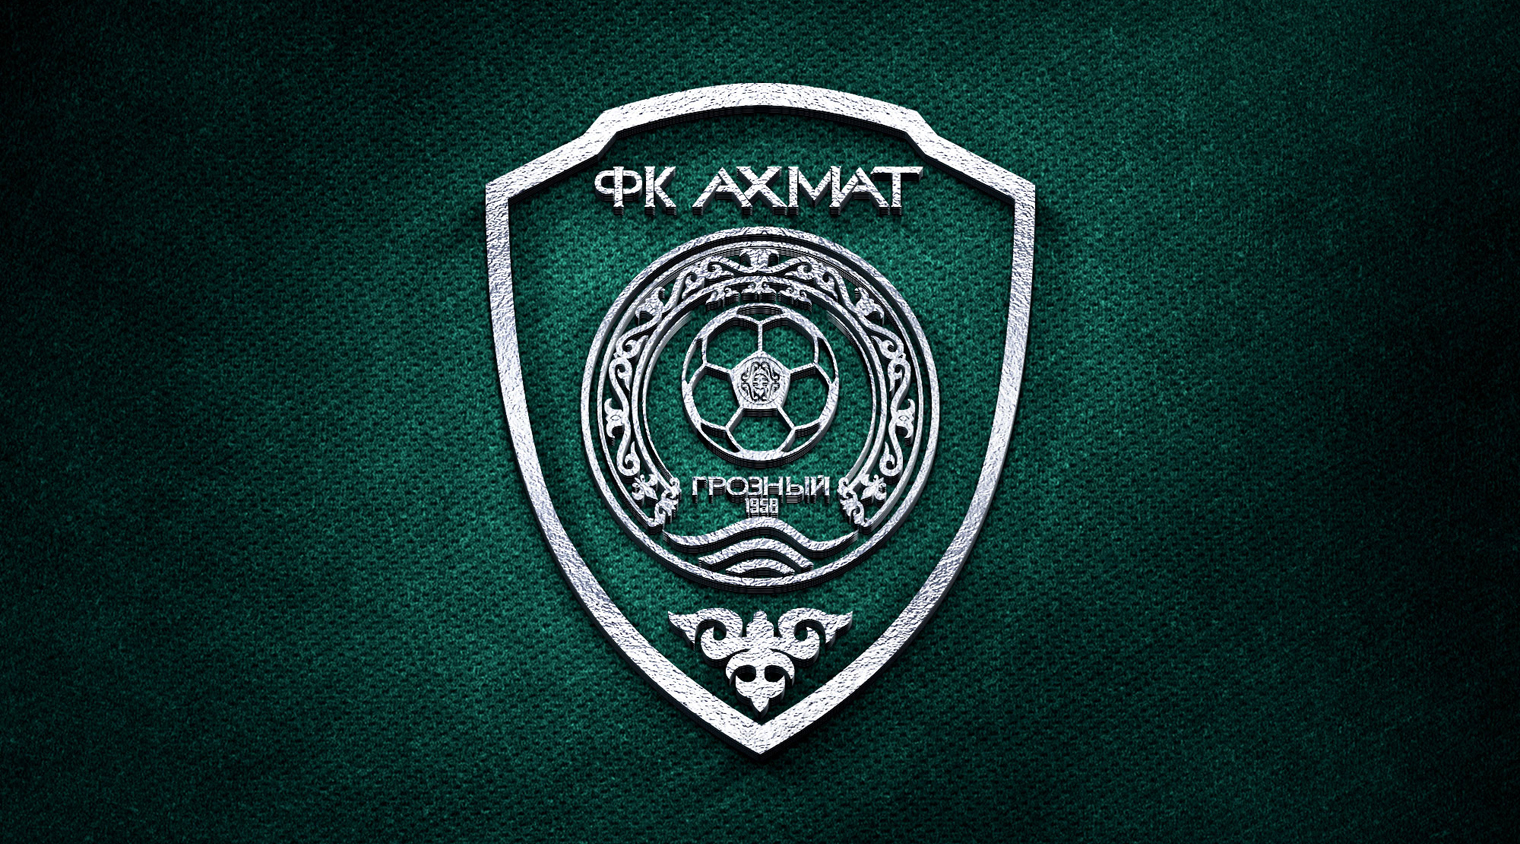 Выбери самый красивый гол нашей команды в первой части сезона — Все новости  — официальный сайт РФК Ахмат